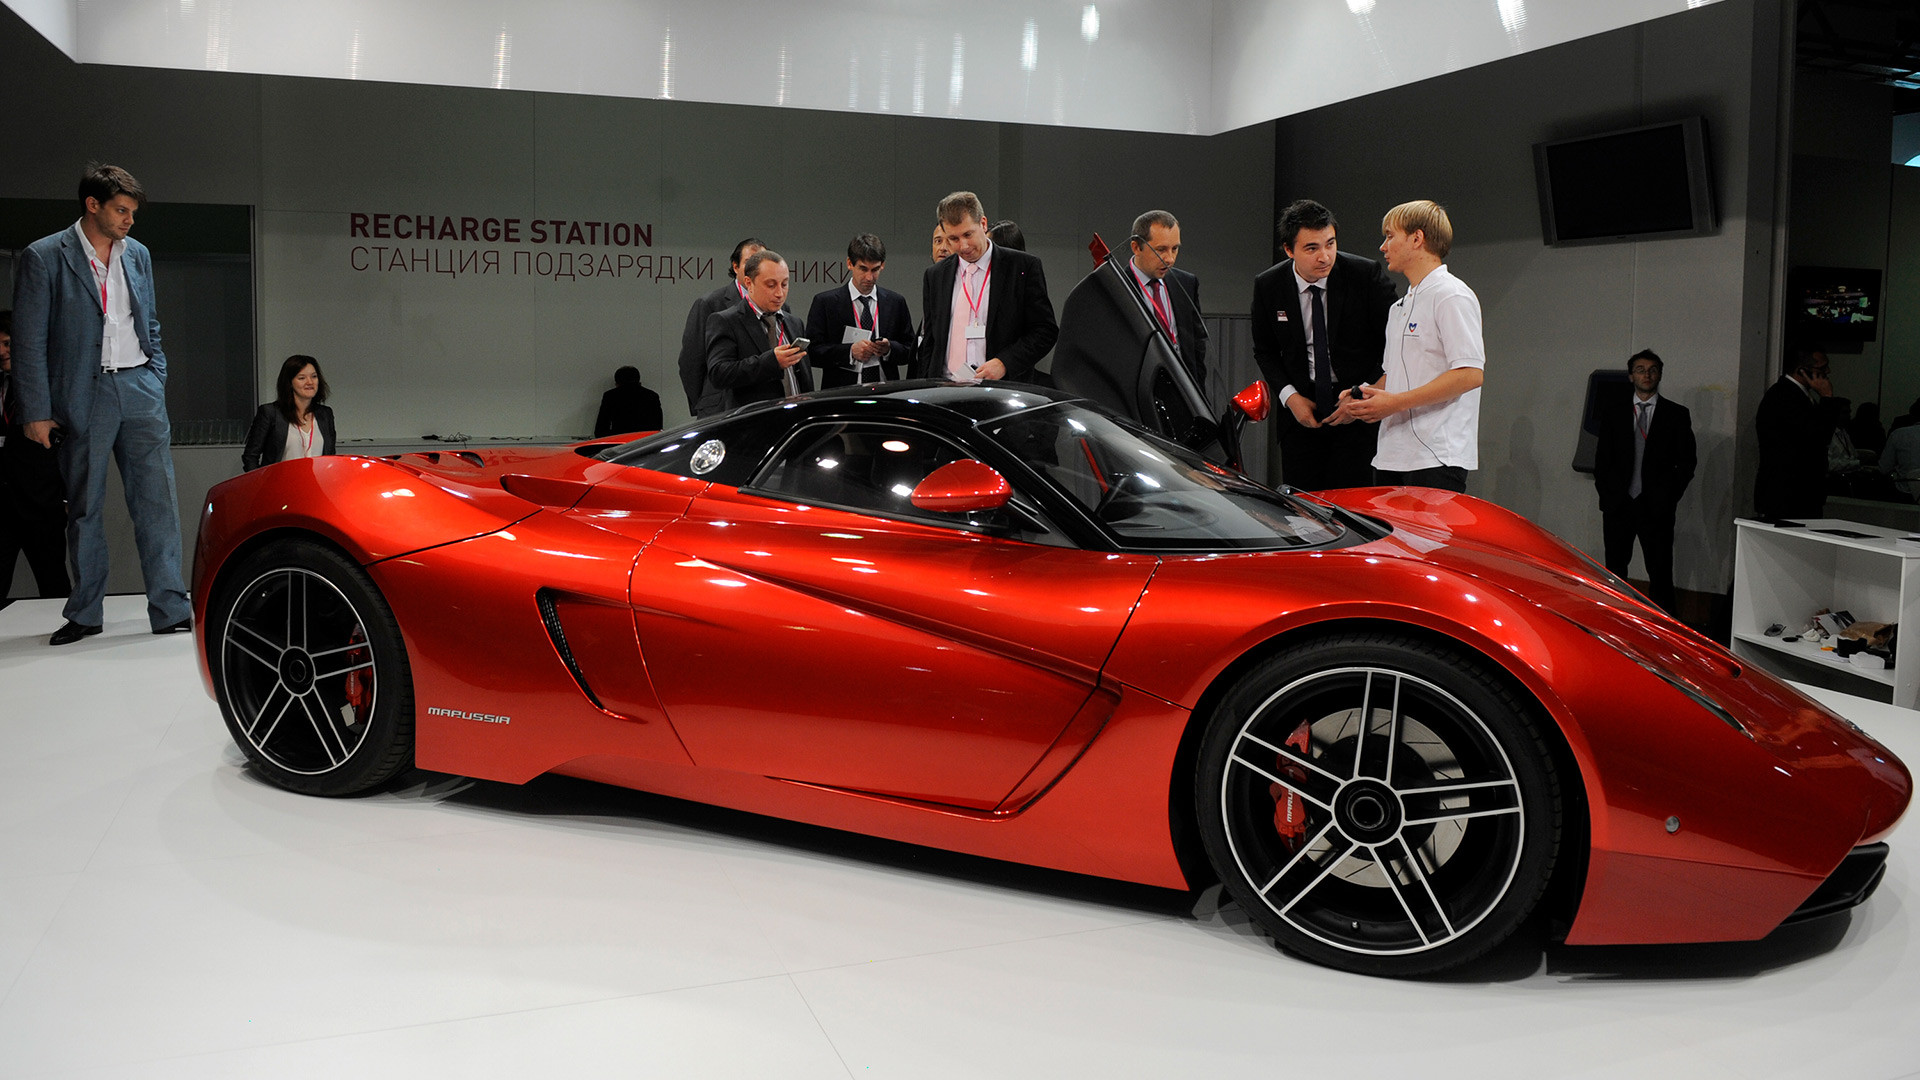 Аутомобил „Марусја“ представљен на 15. годишњој конференцији инвеститора у изложбеном простору „Експоцентар“.